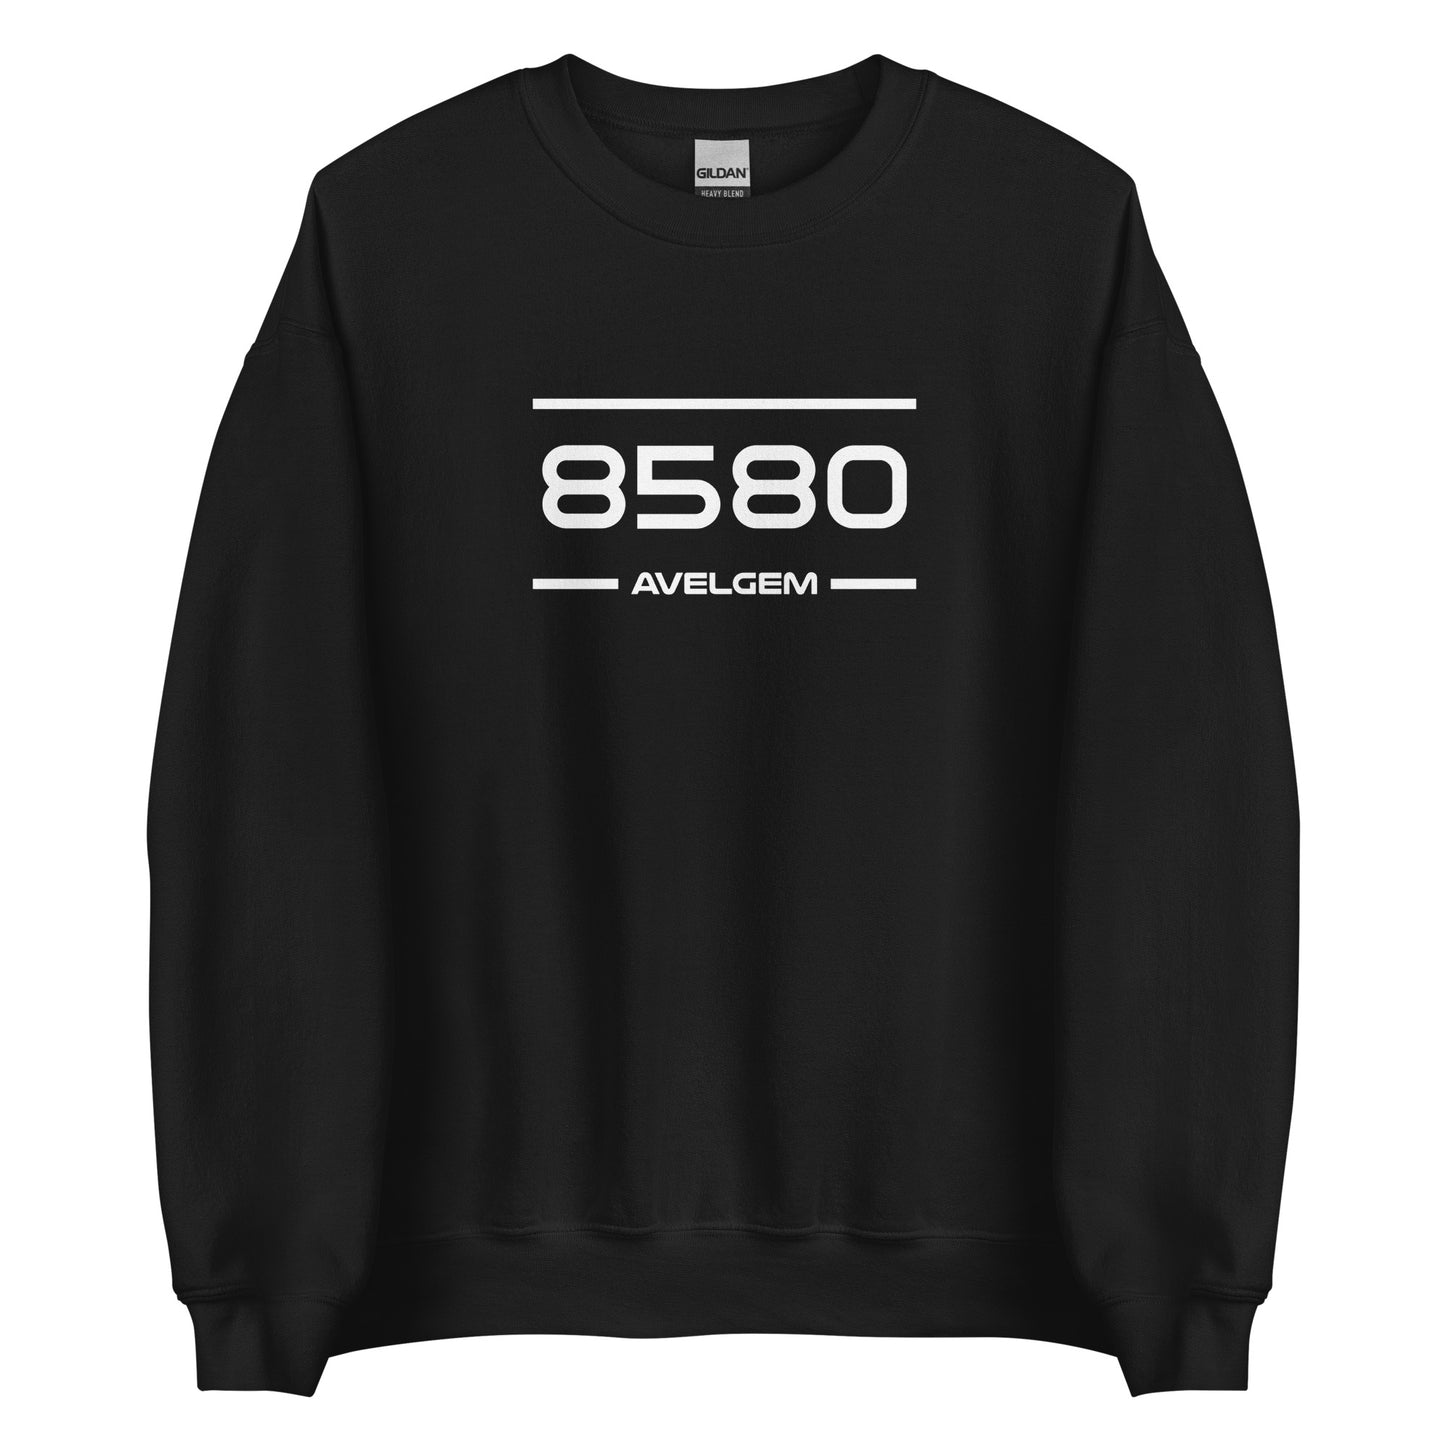 Sweater - 8580 - Avelgem (M/V)